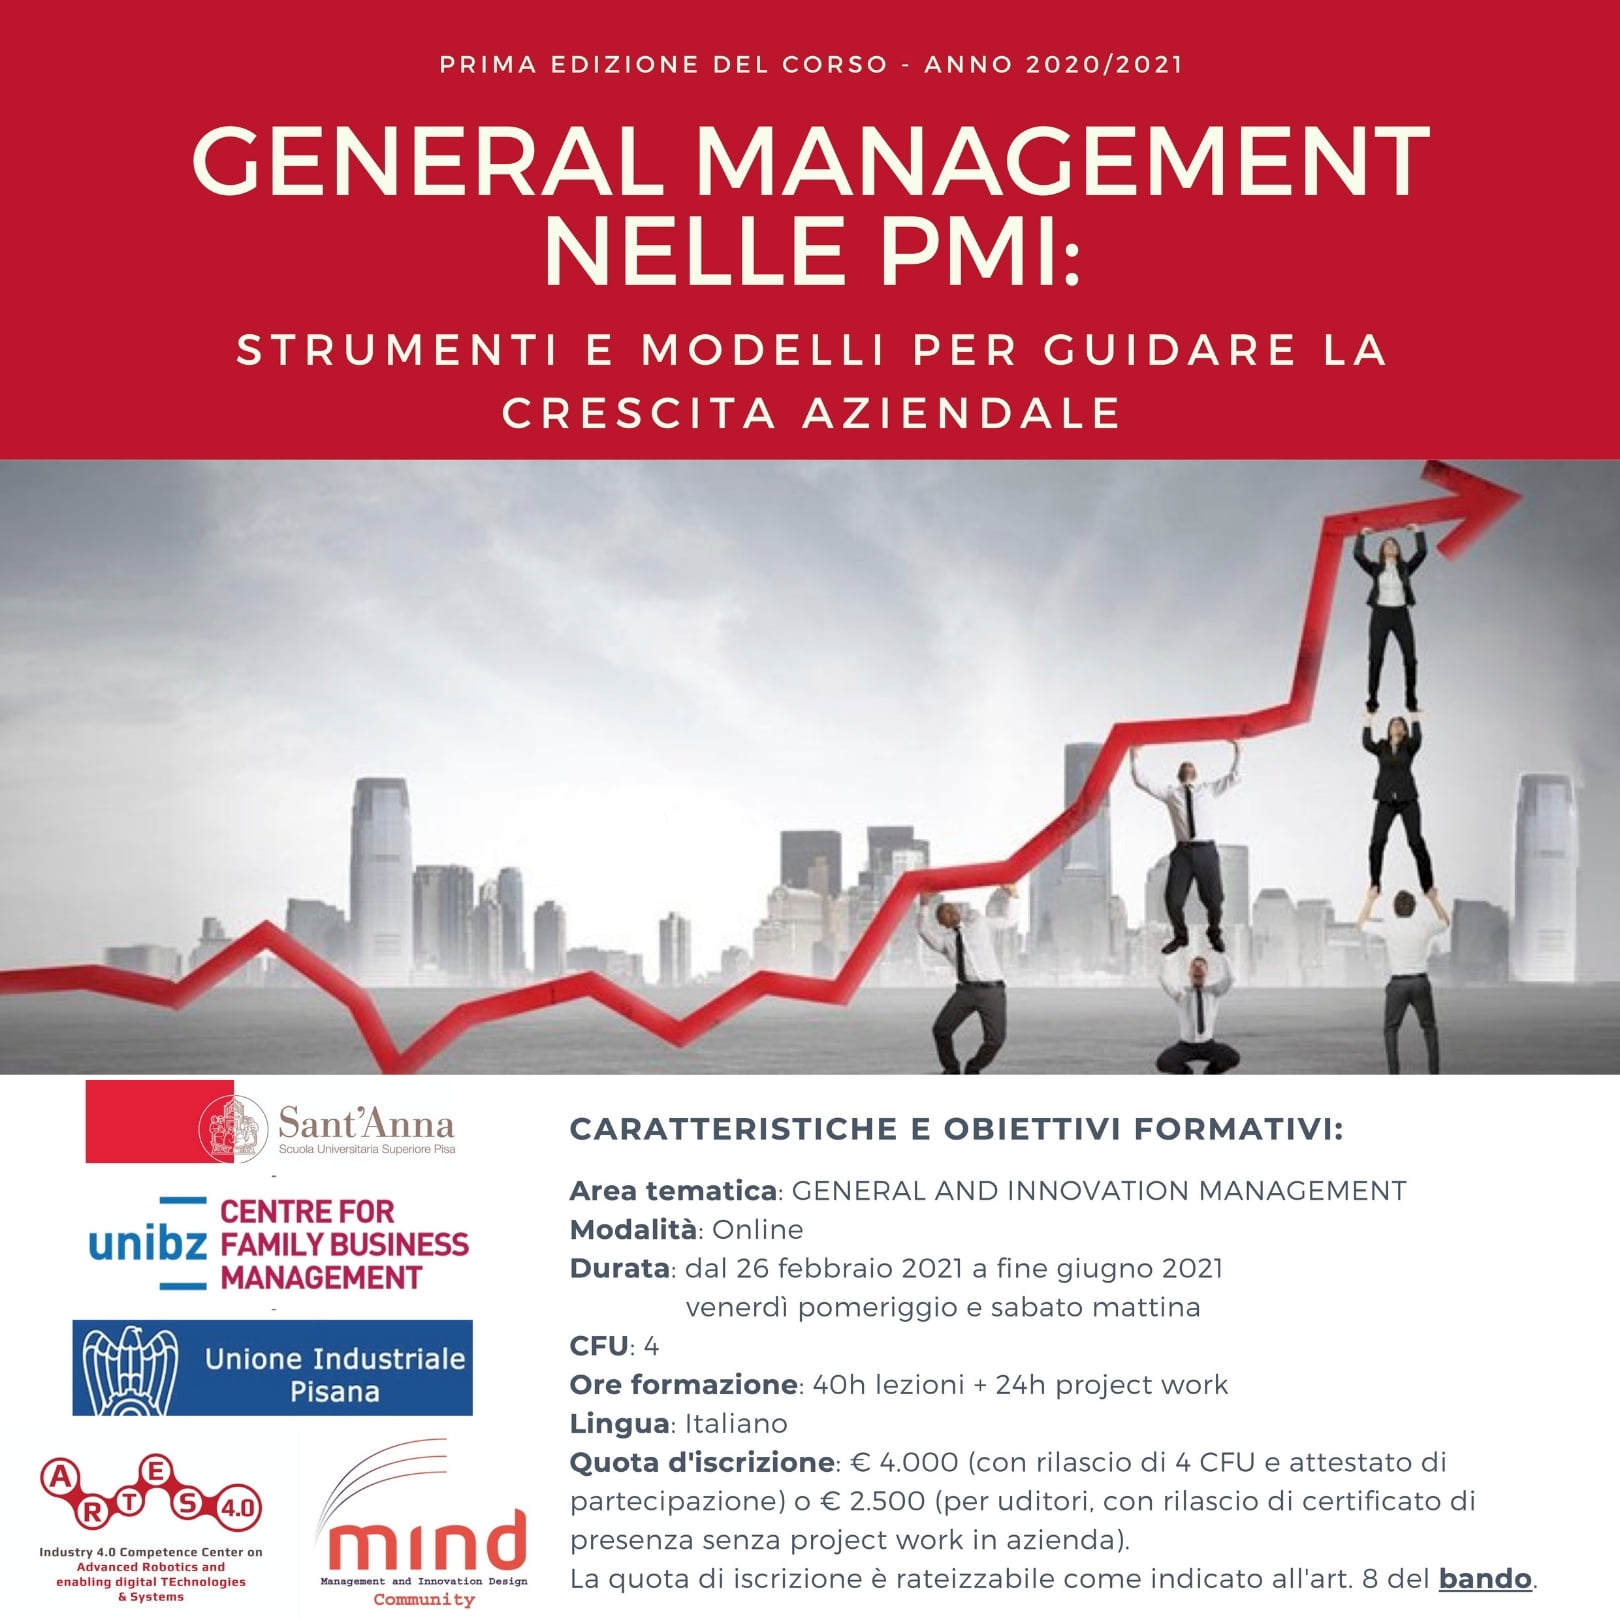 18 dicembre 2020 – Conferenza Stampa di presentazione del Corso “General Management nelle PMI”